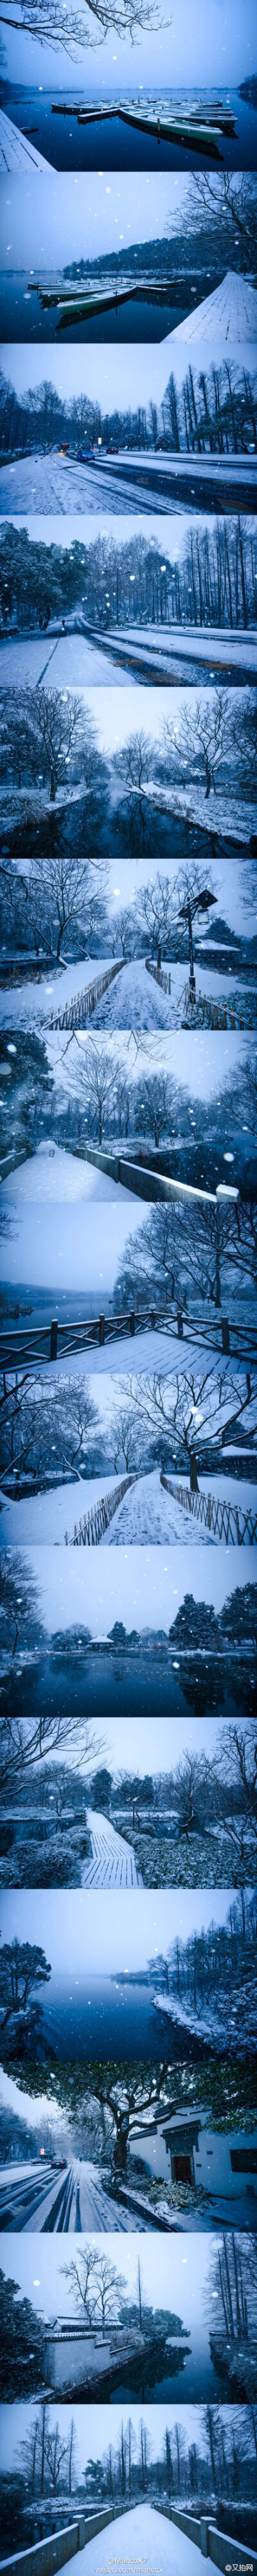 与人山人海的断桥残雪相比，杨公堤沿线的雪景更有一份低调的气质。远离熙熙攘攘的人群的纯净世界，宁静之美！今年冬天，你想来杭州看雪吗？